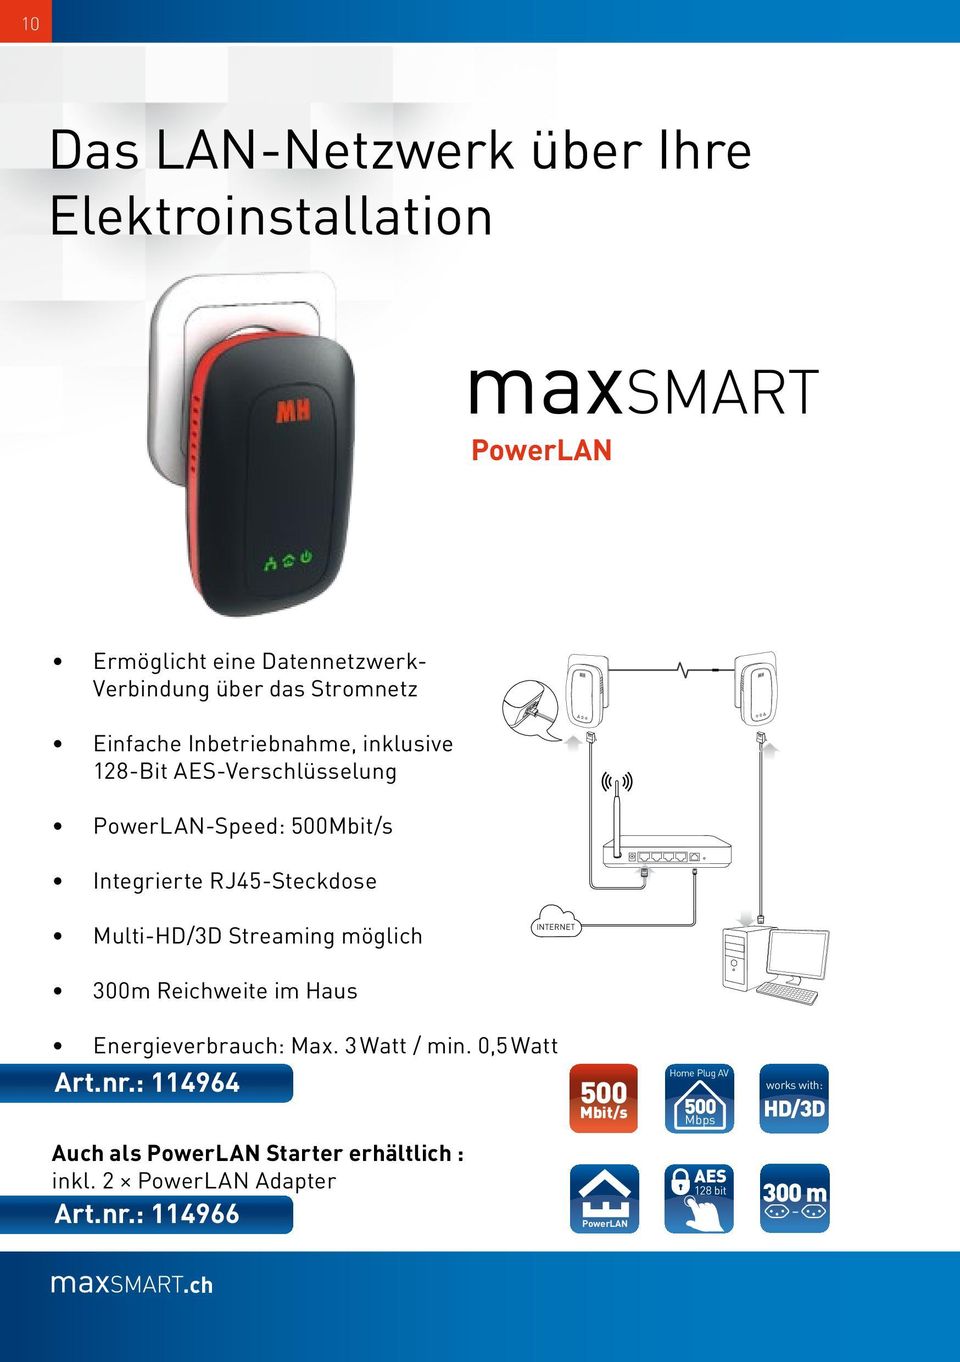 möglich INTERNET 300m Reichweite im Haus Energieverbrauch: Max. 3 Watt / min. 0,5 Watt Art.nr.